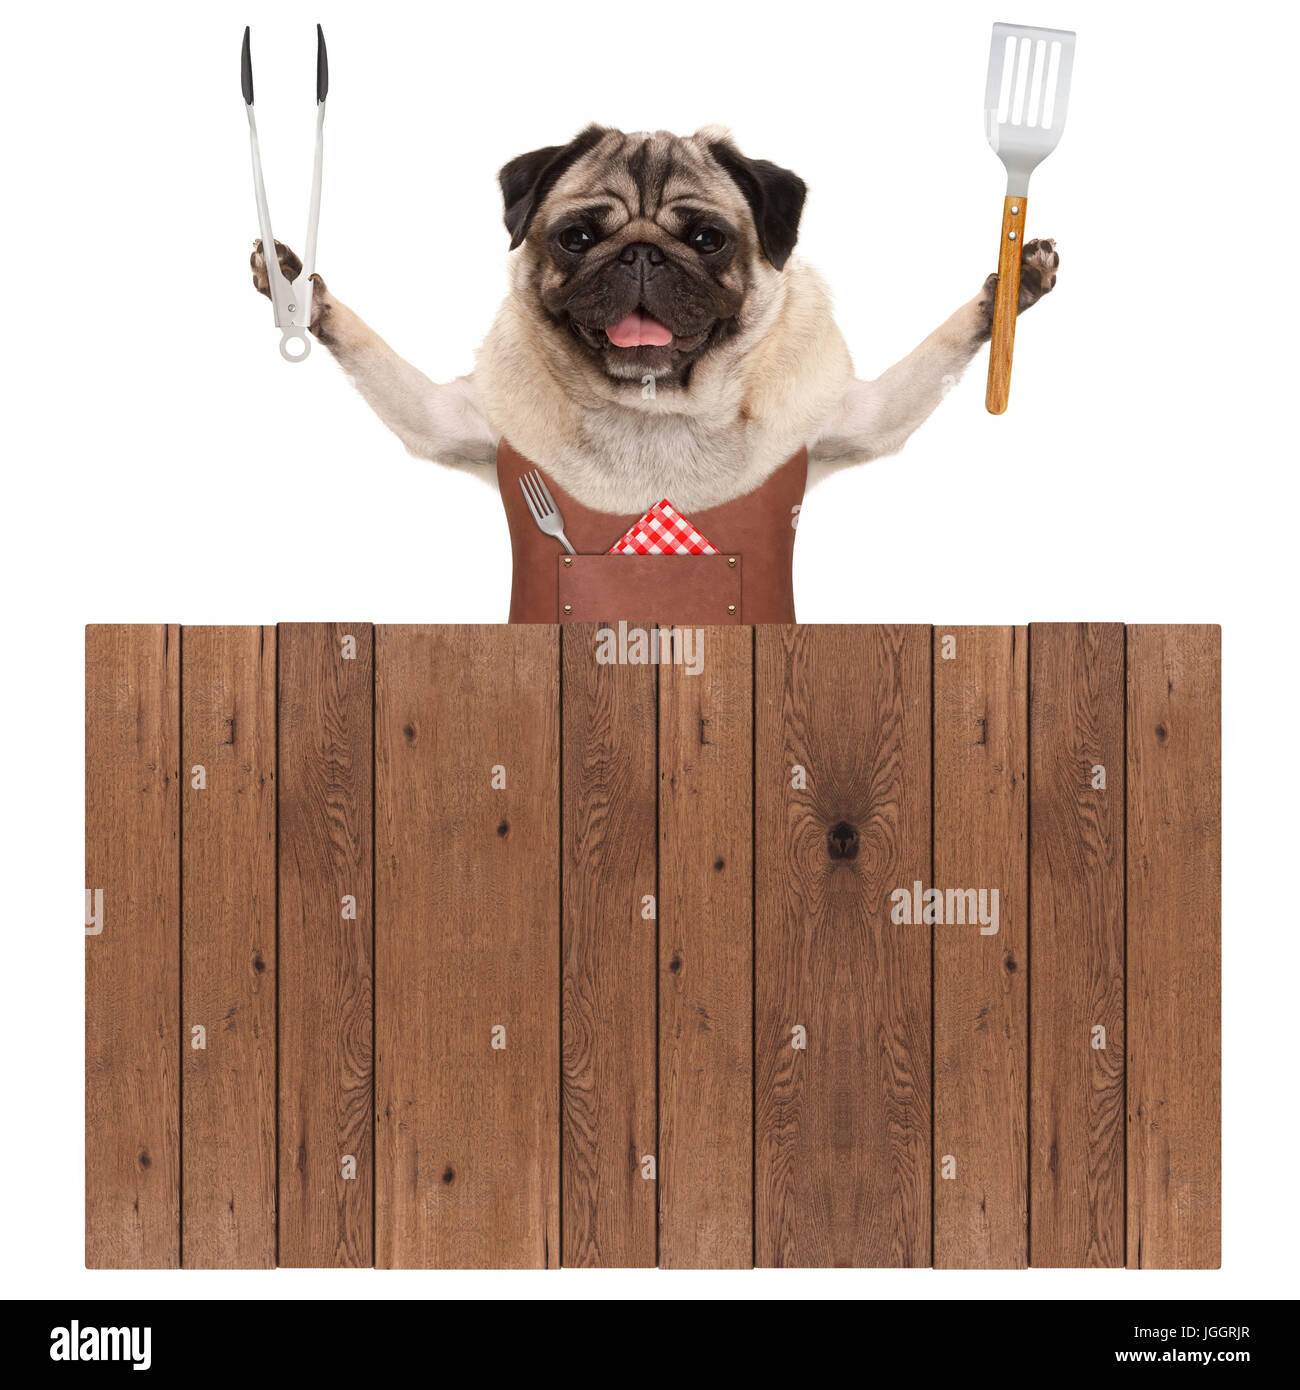 Sorridente pug dog indossando il cuoio grembiule, tenendo la carne tong e la spatola, dietro la recinzione di legno, isolato su sfondo bianco Foto Stock